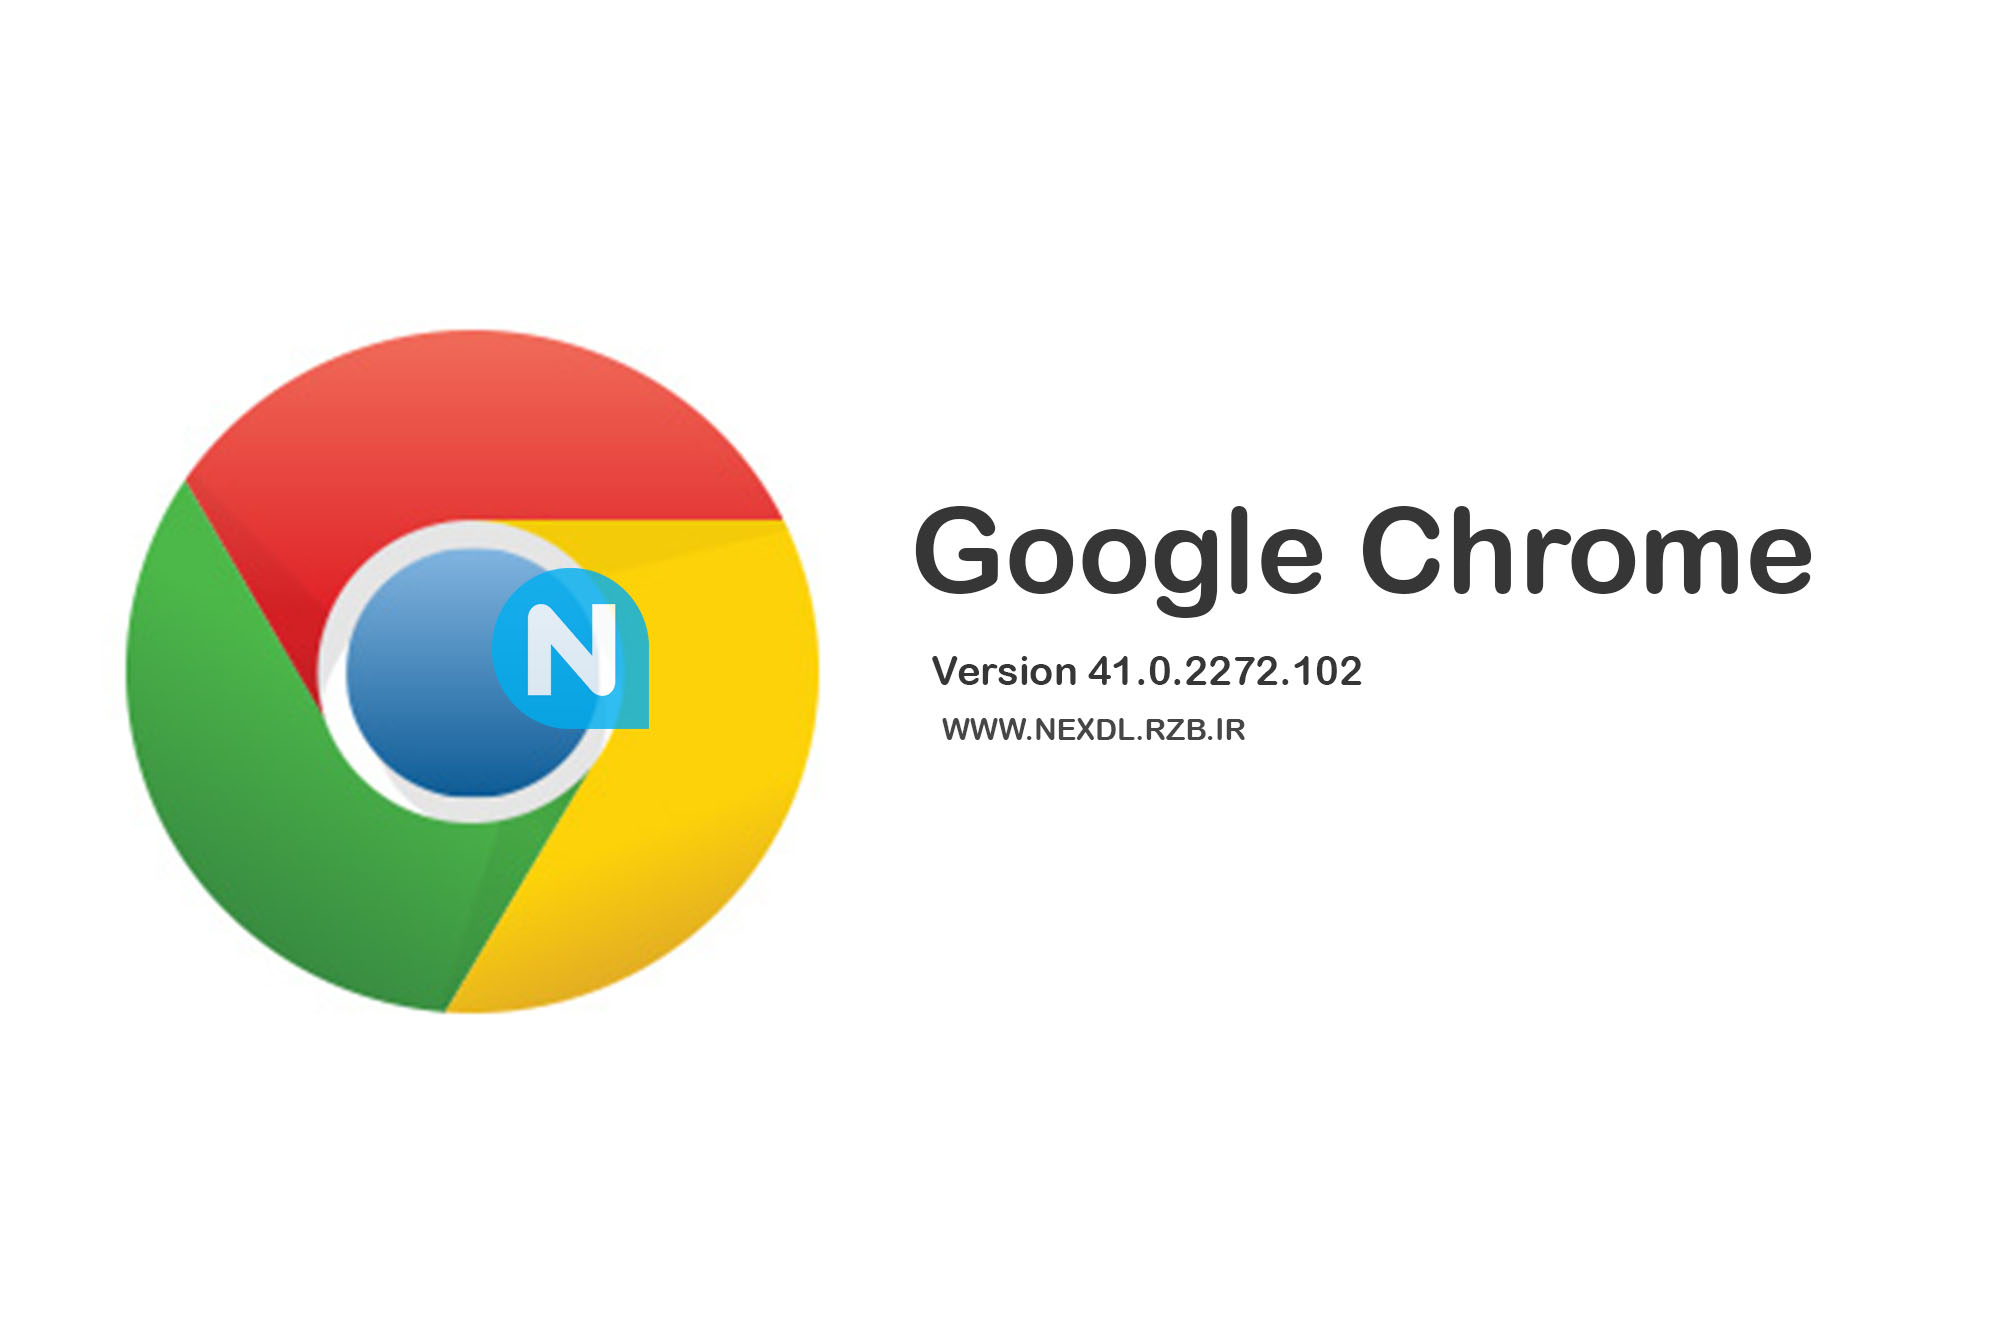 دانلود گوگل کروم - Google Chrome 41.0.2272.102 Final